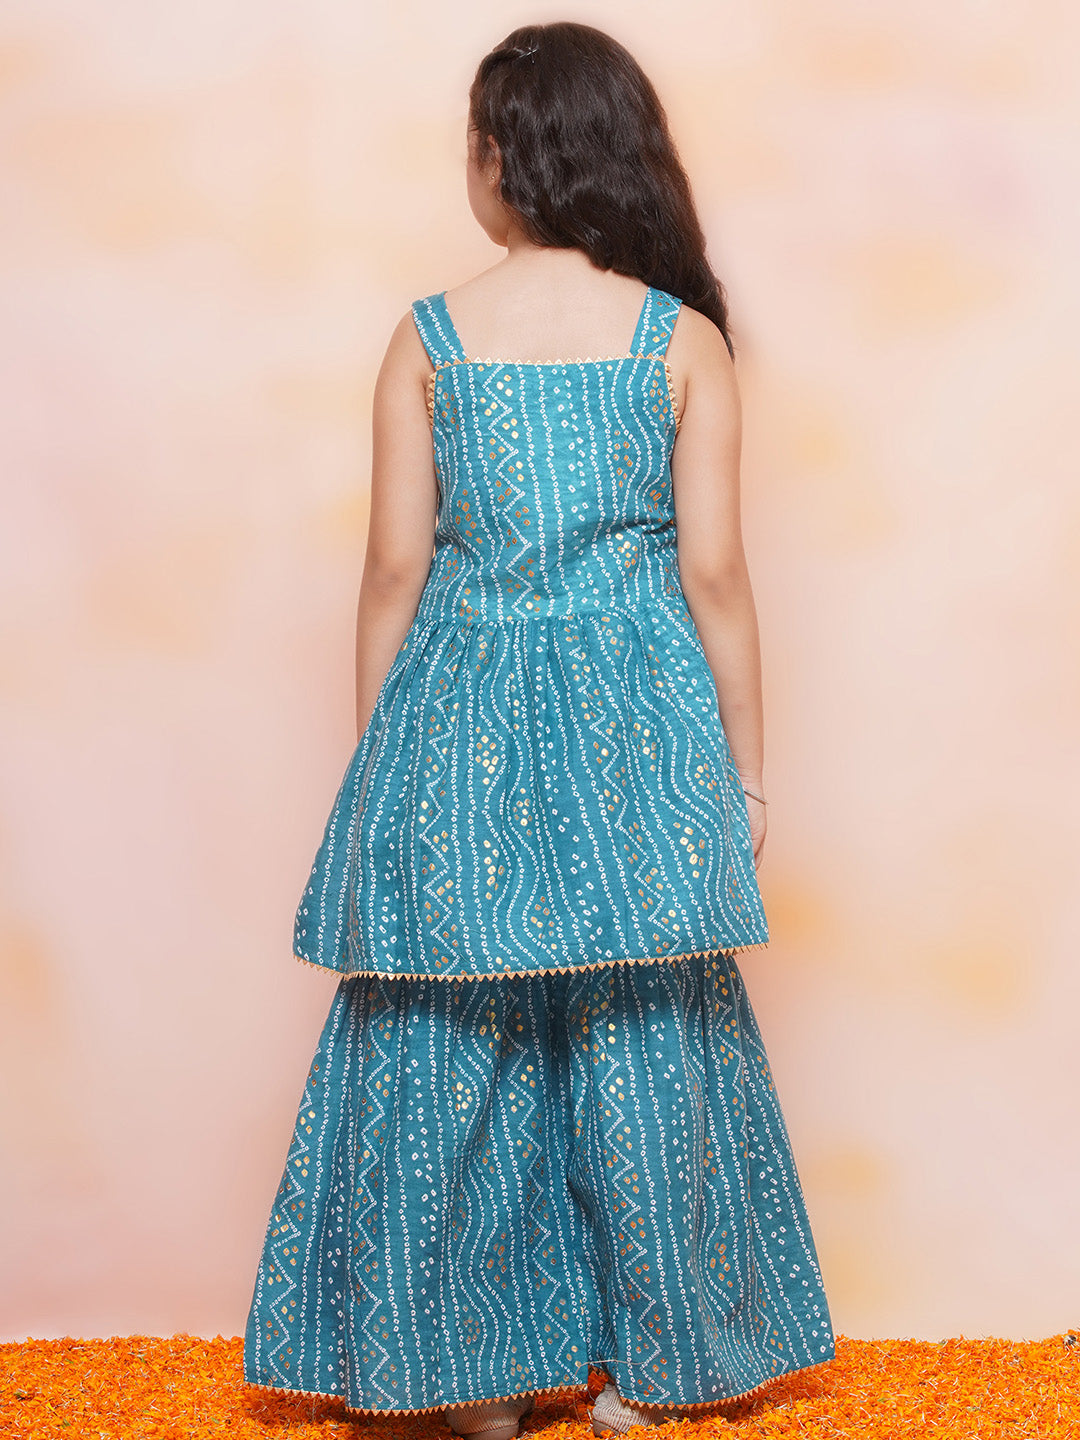 Beautiful 3piece kids sharara dupatta,sharara dress for girls,kids wear  sharara | eBay